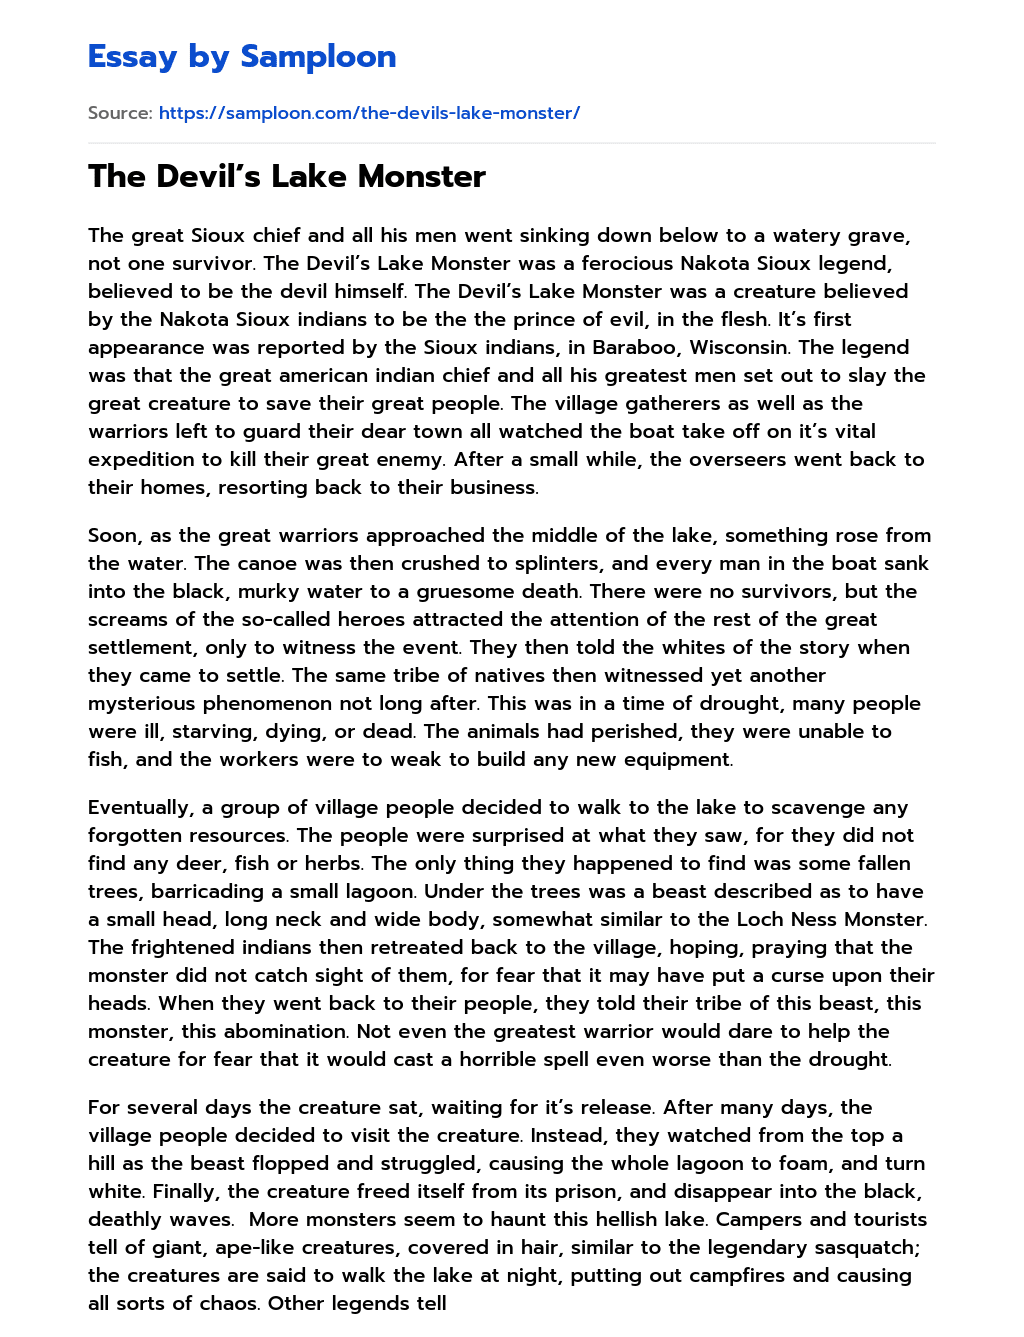 The Devil’s Lake Monster essay